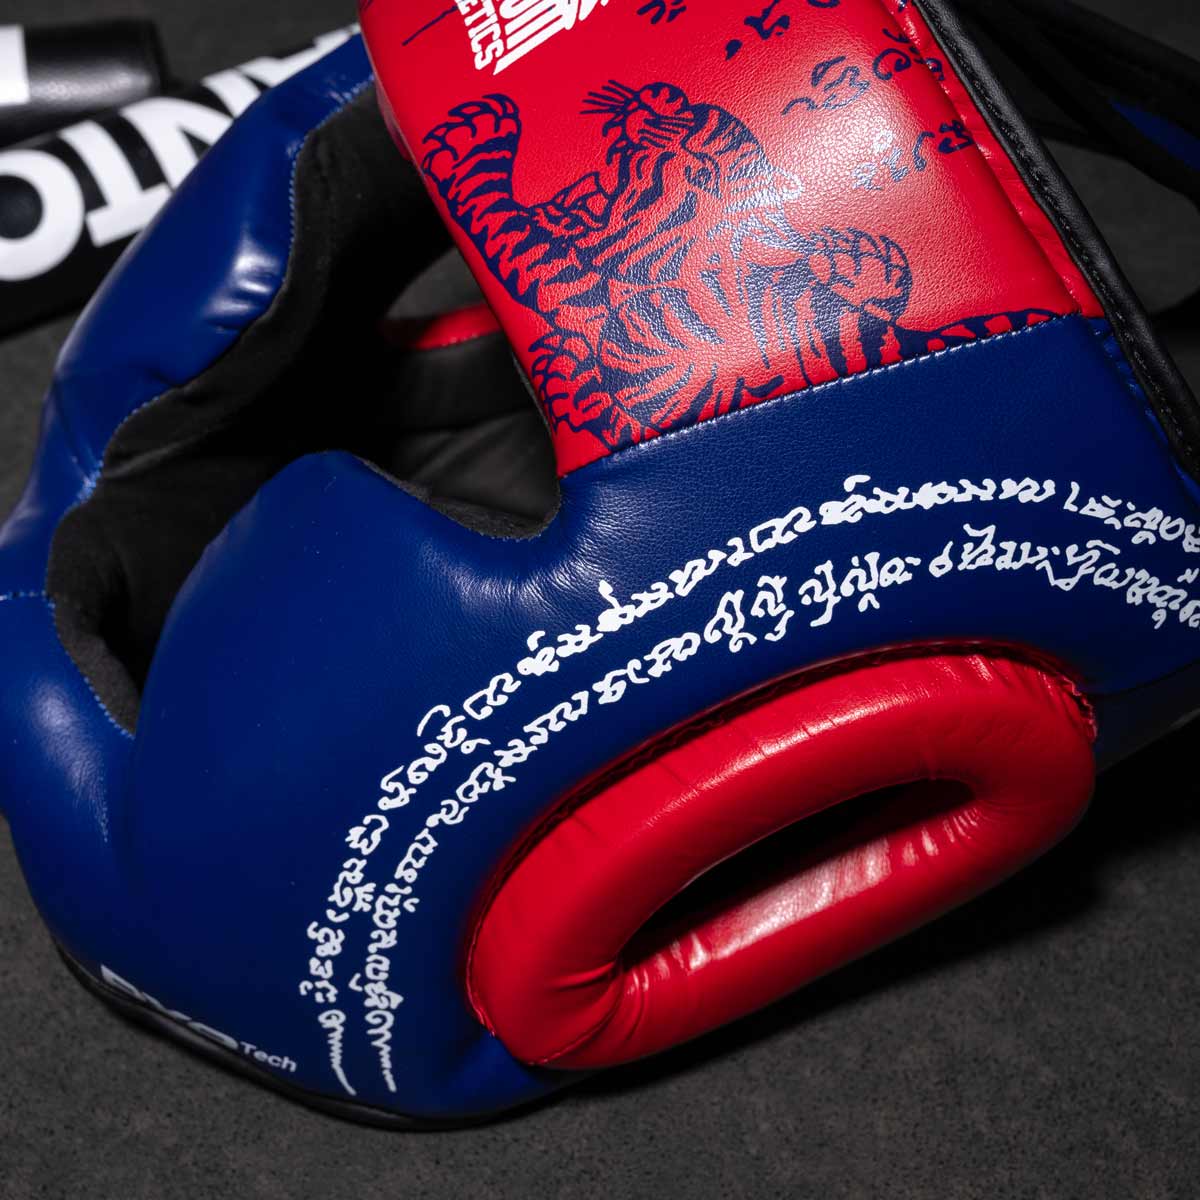 Phantom Muay Thai Kopfschutz für Thaiboxen und MMA Sparring, Wettkampf und Training. Im traditionellen Sak Yant Design und der Farbe Blau/Rot.